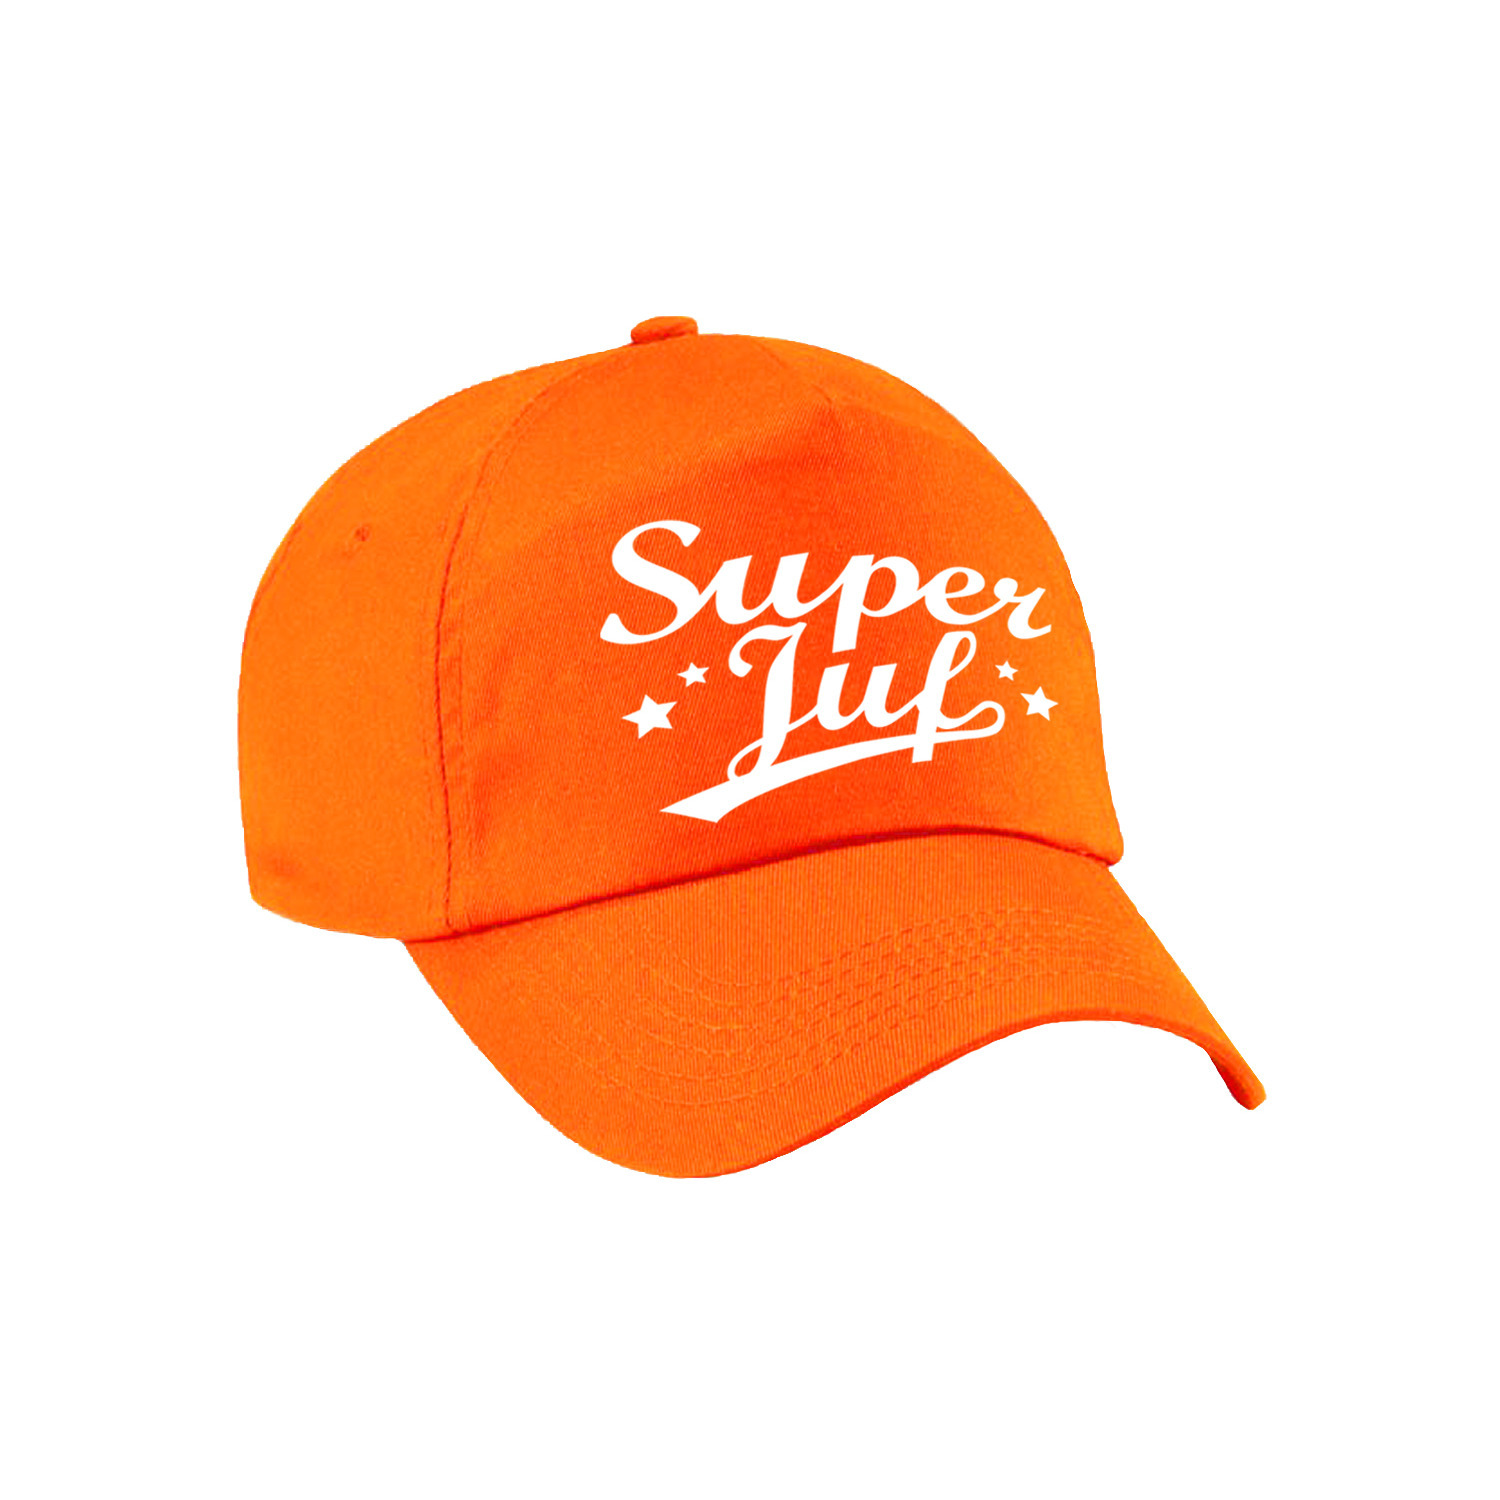 Super juf cadeau pet /cap oranje voor dames